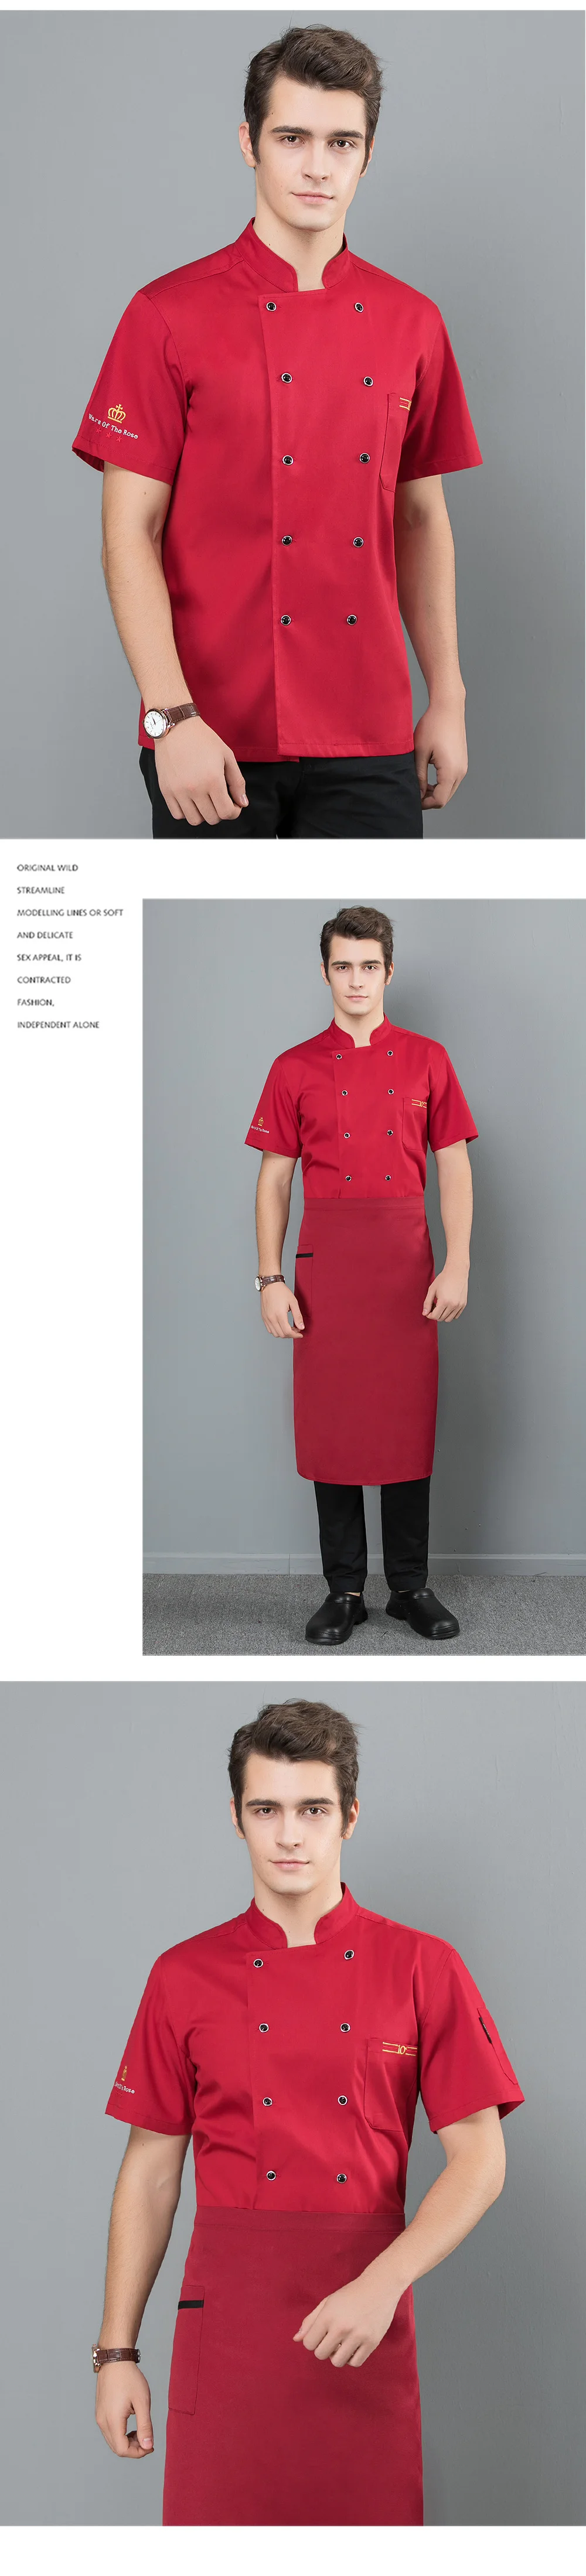 Двубортные услуги питания униформа для повара отеля питание Кухня мужчины шеф-повара КУРТКА плита рабочая одежда Ресторан униформа